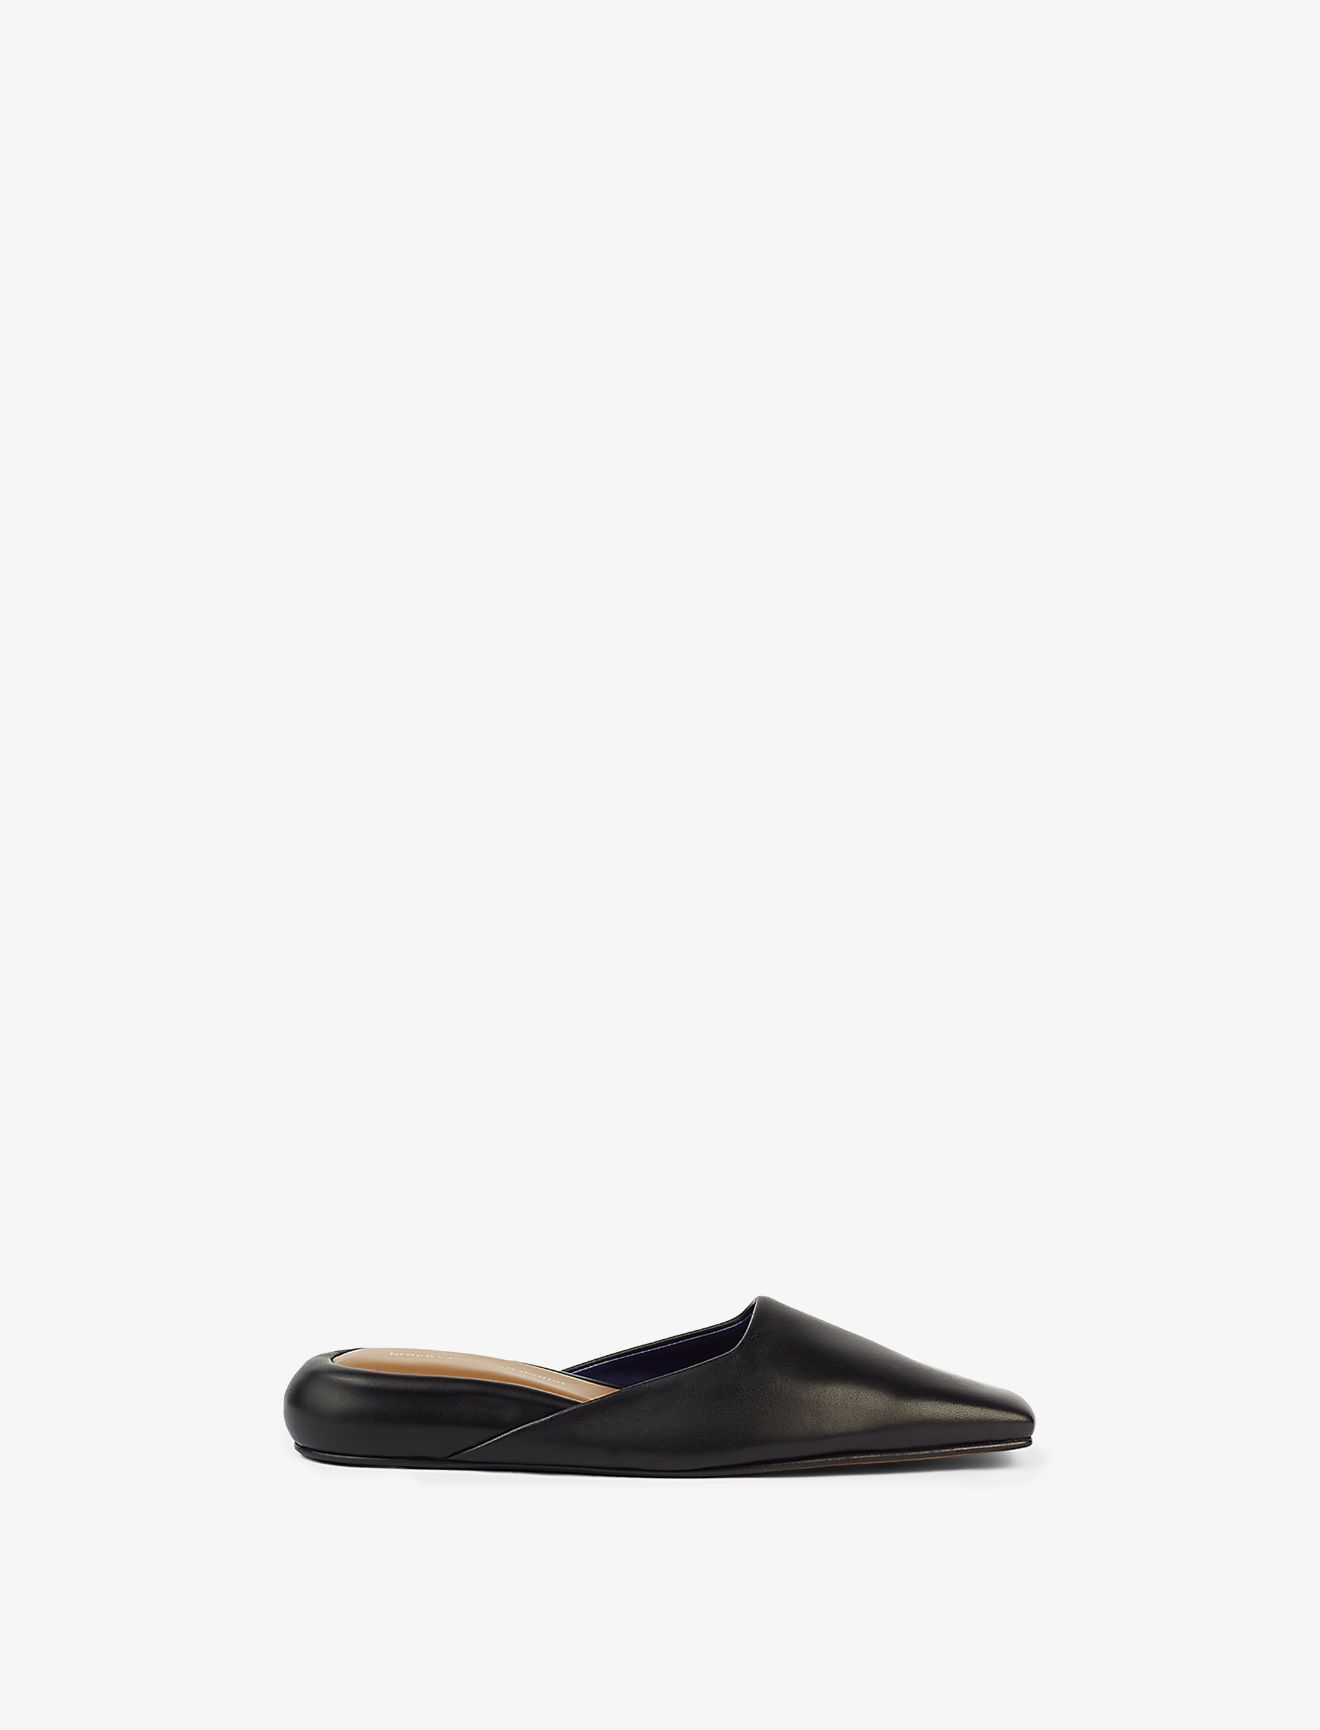 Quad Slippers in black | Proenza Schouler